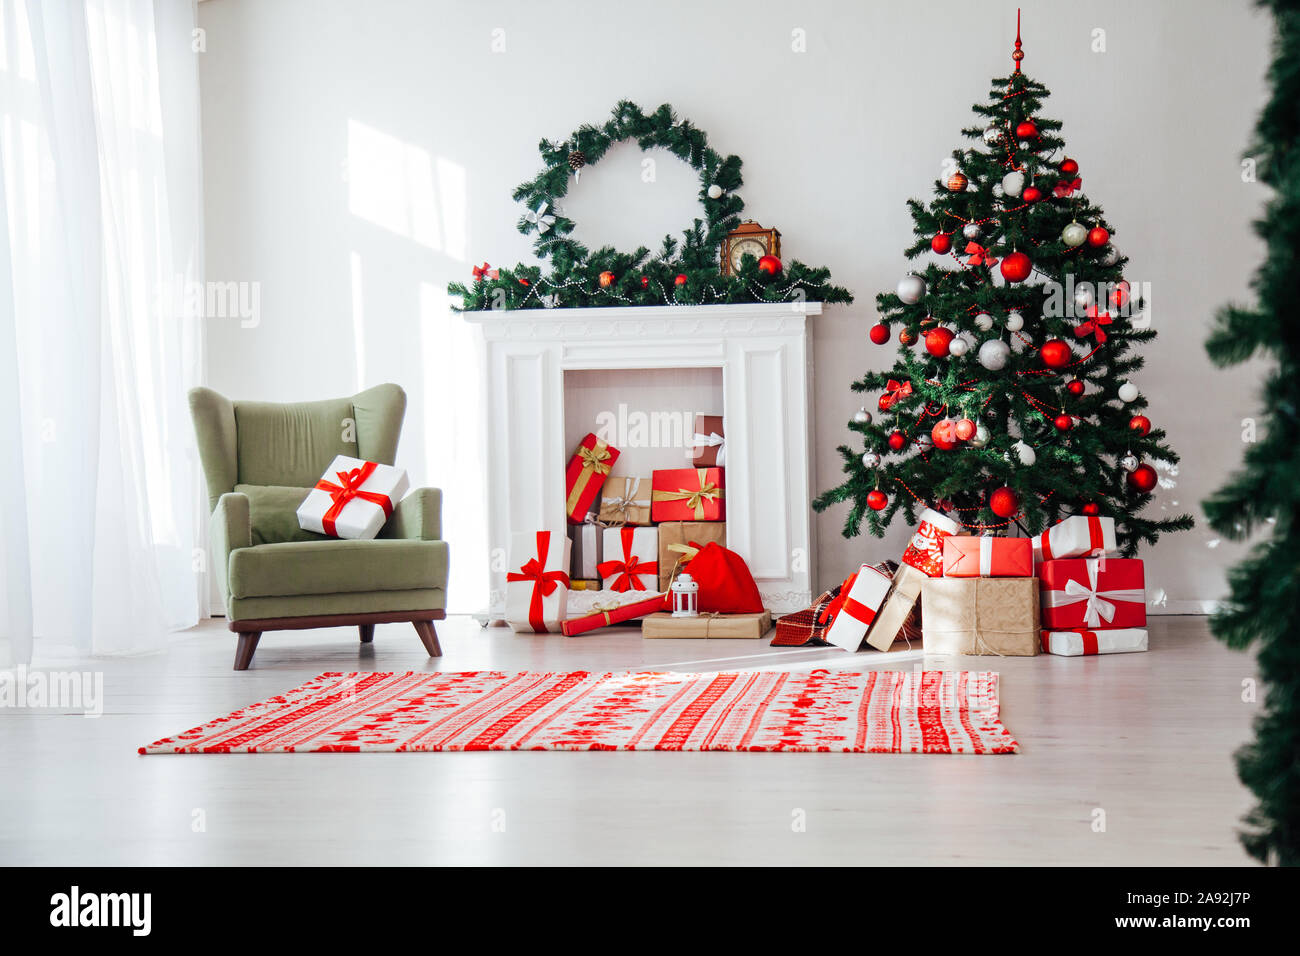 Nội thất nhà Giáng Sinh cây thông đỏ quà tặng trang trí năm mới sẽ khiến bạn cảm thấy một mùa đông ấm áp và ngọt ngào. Hình ảnh sẽ đưa bạn đến những góc nhìn tuyệt đẹp của những căn nhà đầy ắp các món quà và đồ trang trí.